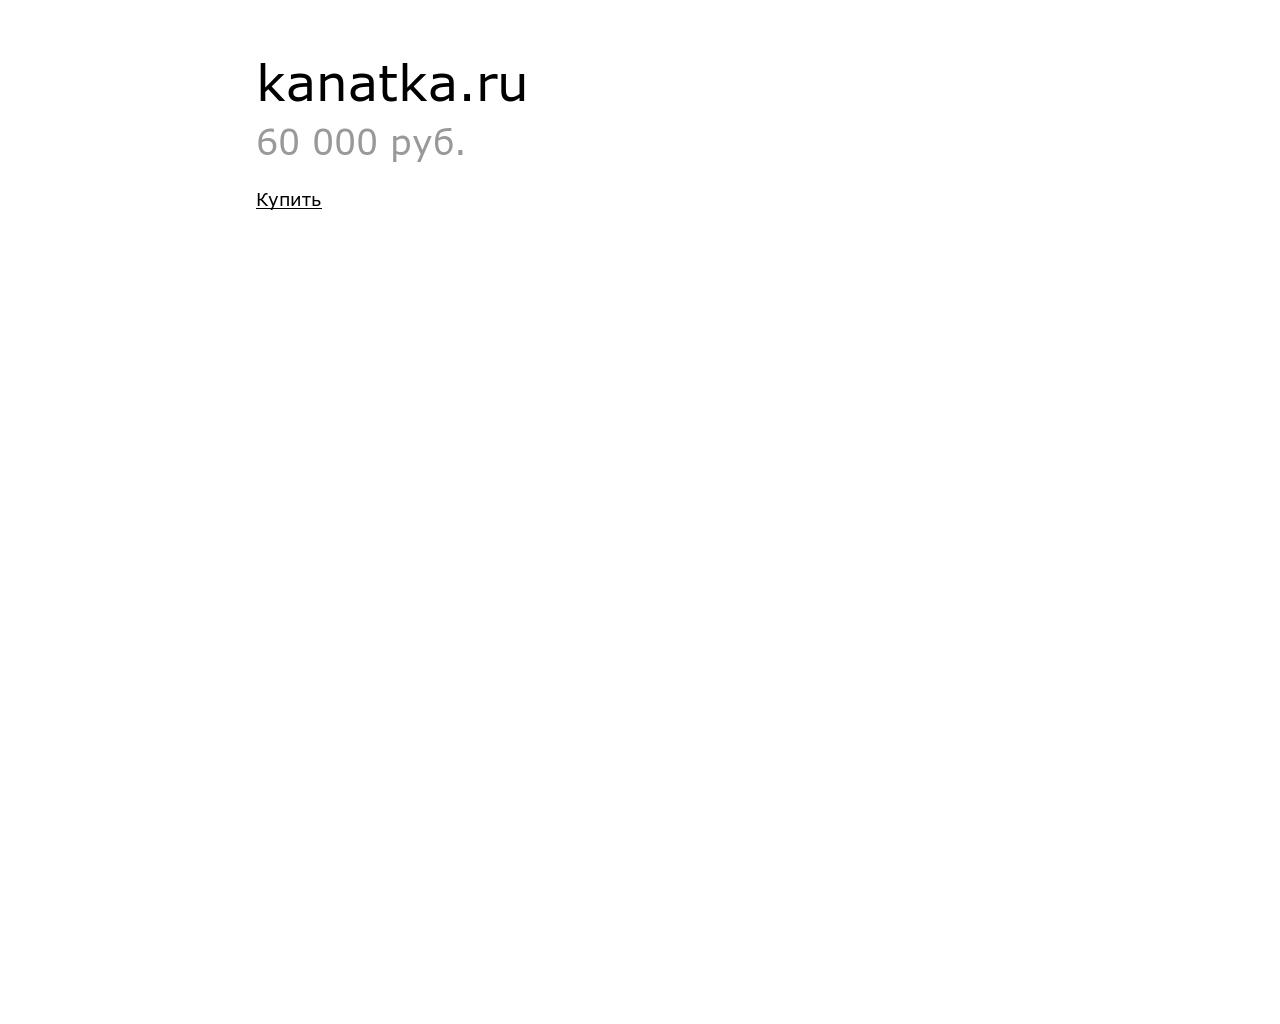 Изображение сайта kanatka.ru в разрешении 1280x1024